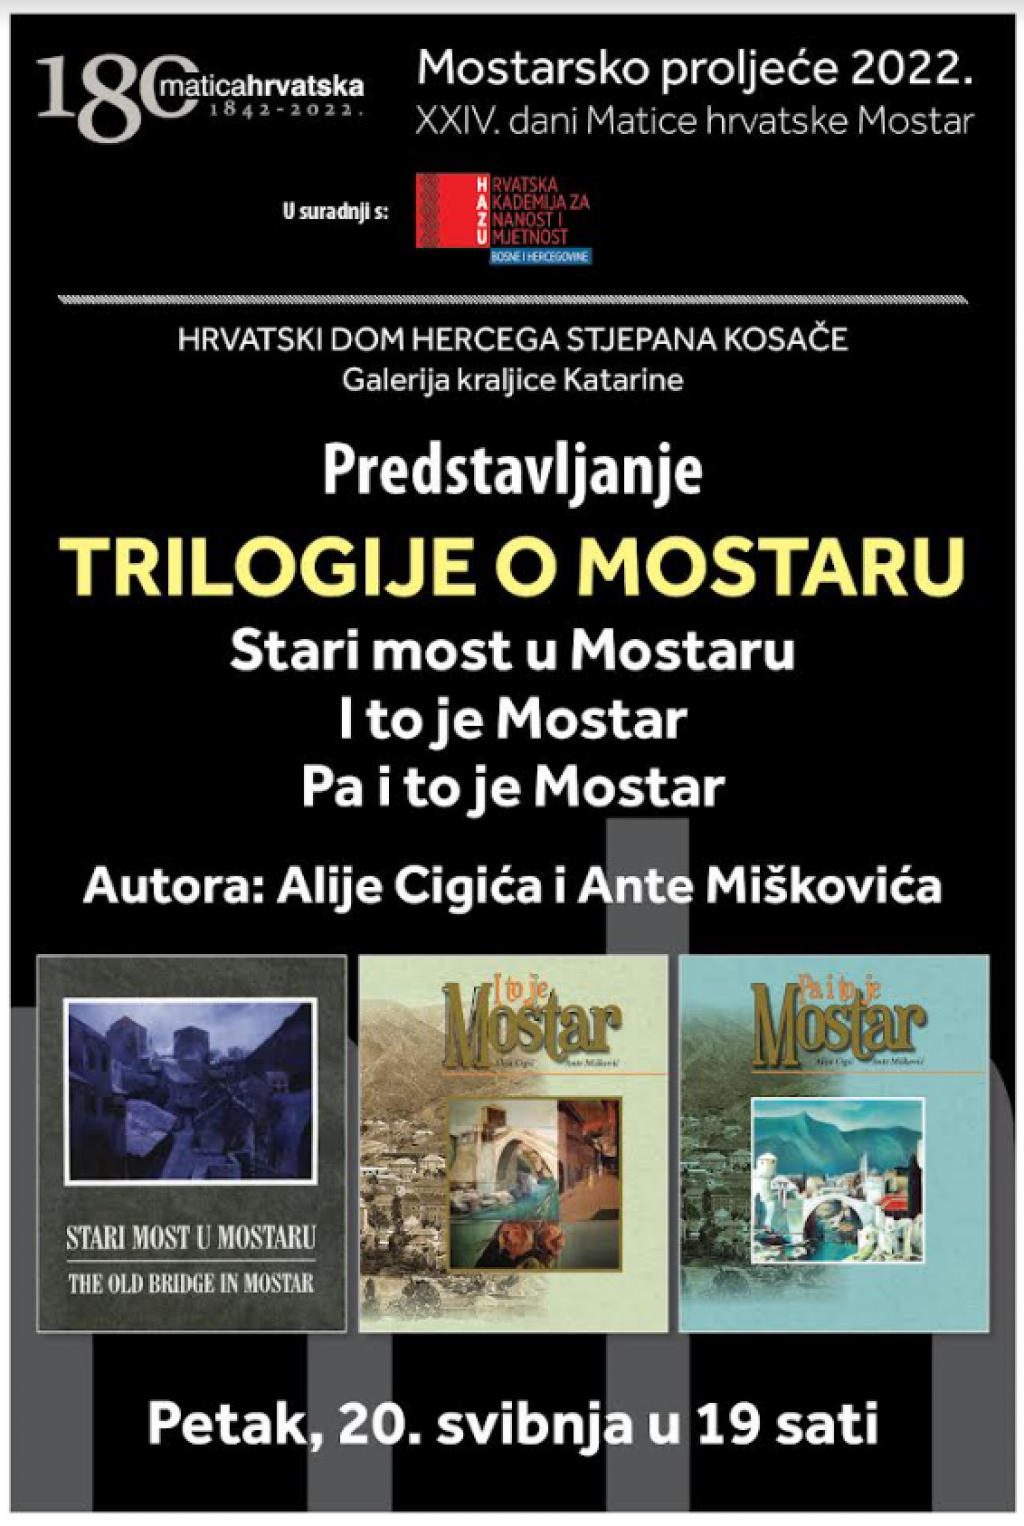 &lt;p&gt;Predstavljanje Trilogije o Mostaru&lt;/p&gt;
